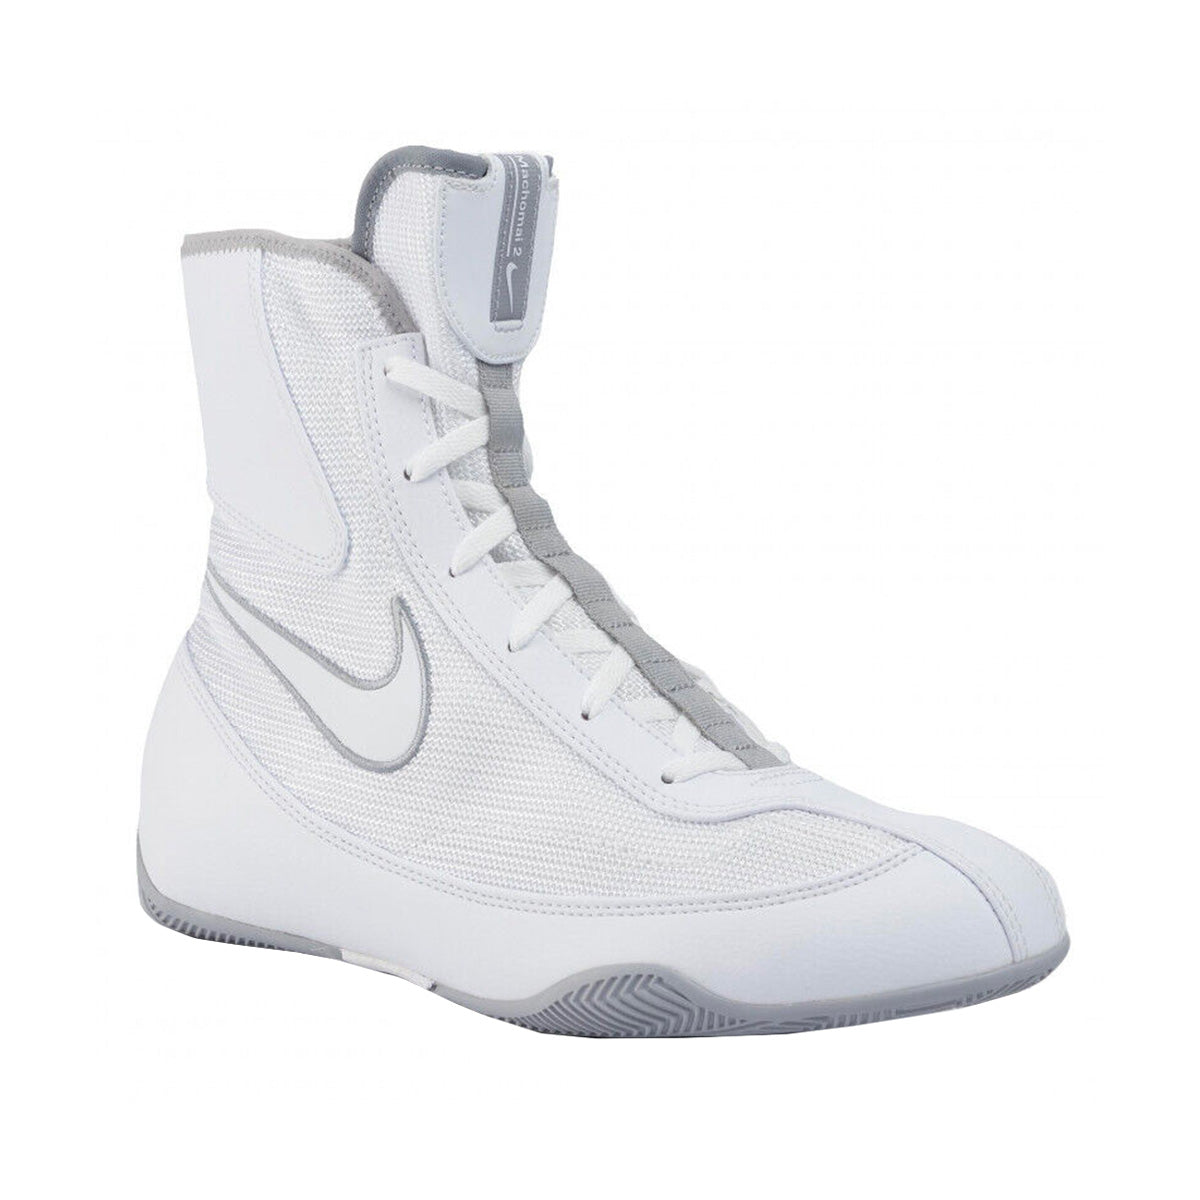 Nike Machomai 2 boxing shoes-Boxing shoes-Nike®-9-Canada Fighting